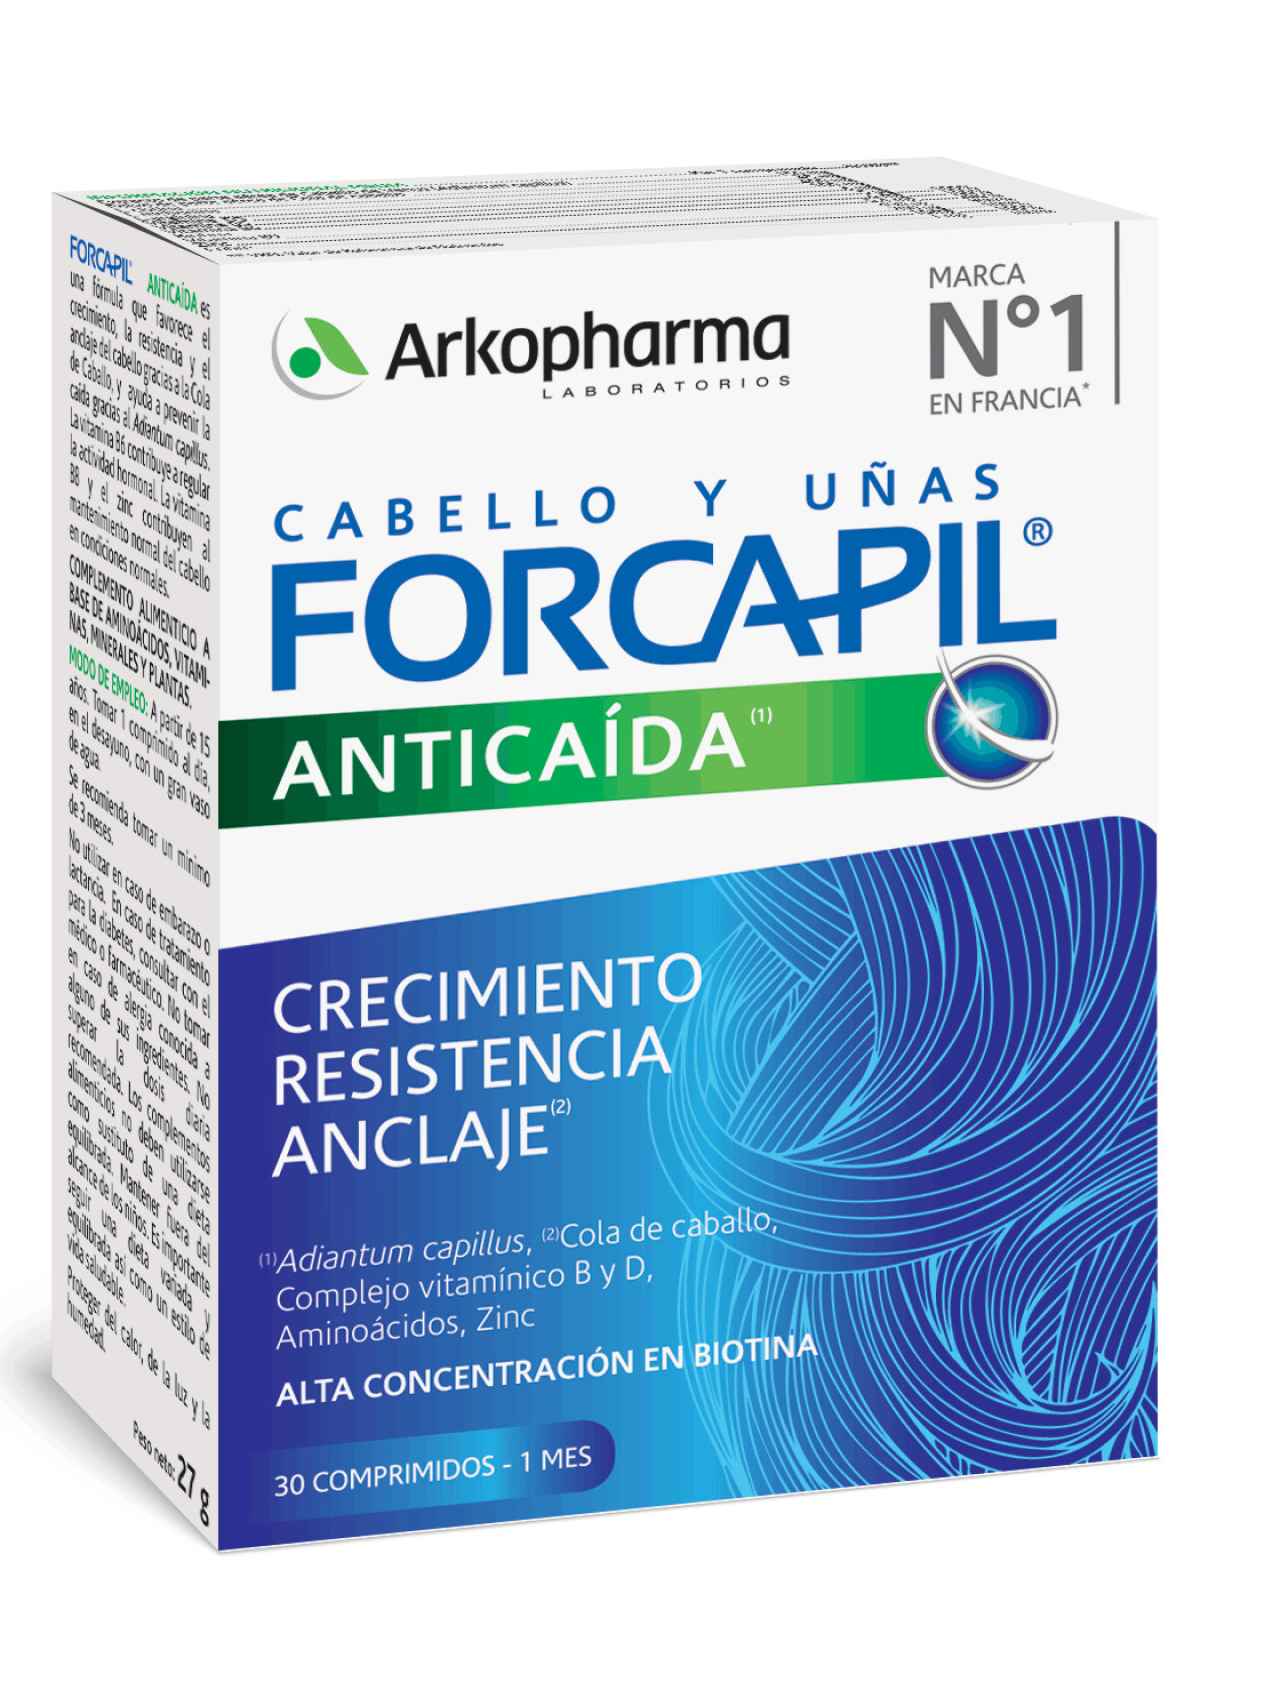 Forcapil® Anticaída es un complemento alimenticio que favorece la fuerza, el crecimiento, la resistencia y la densidad del cabello. PVP: 29,90€ - De Arkopharma.